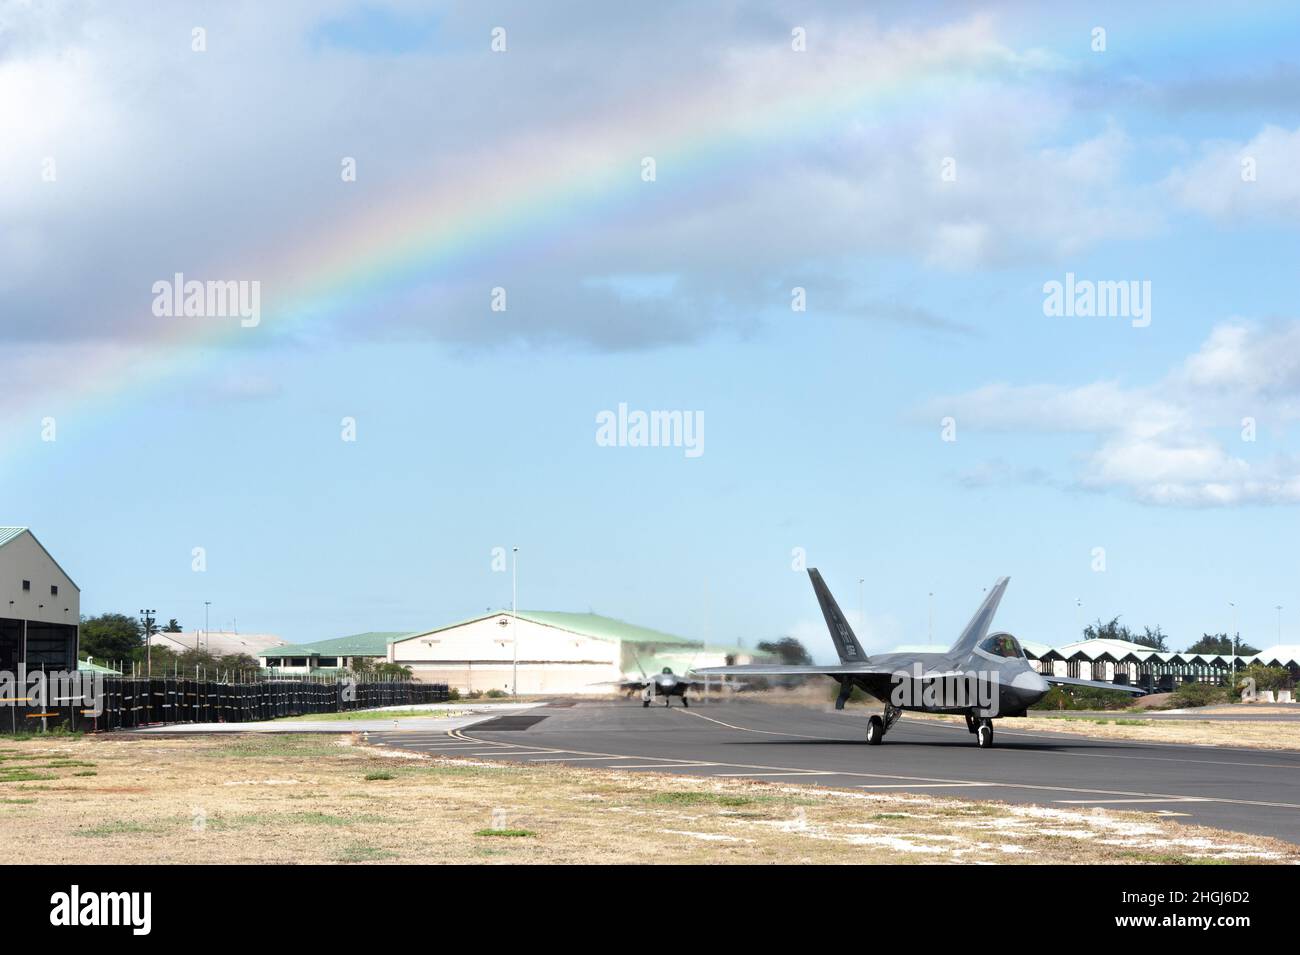 Hawaii Air National Guard F-22 Raptors fährt während der Übung Sentry Aloha-21 am 13. August 2021 auf der Joint Base Pearl Harbor-Hickam, Hawaii, die Fluglinie entlang. Die Übung wird durchgeführt, um hochwertige Schulungen für die US-Luftwaffe, die Luftwaffe und andere Dienste des Verteidigungsministeriums anzubieten, um die Letalität und die Bereitschaft für gegenwärtige und zukünftige Kriegsjäger zu erhöhen. Die ‘Hawaiian Raptors’ werden von ANG und Active-Duty Airmen der 199. Und 19. Jagdgeschwader betrieben. Stockfoto